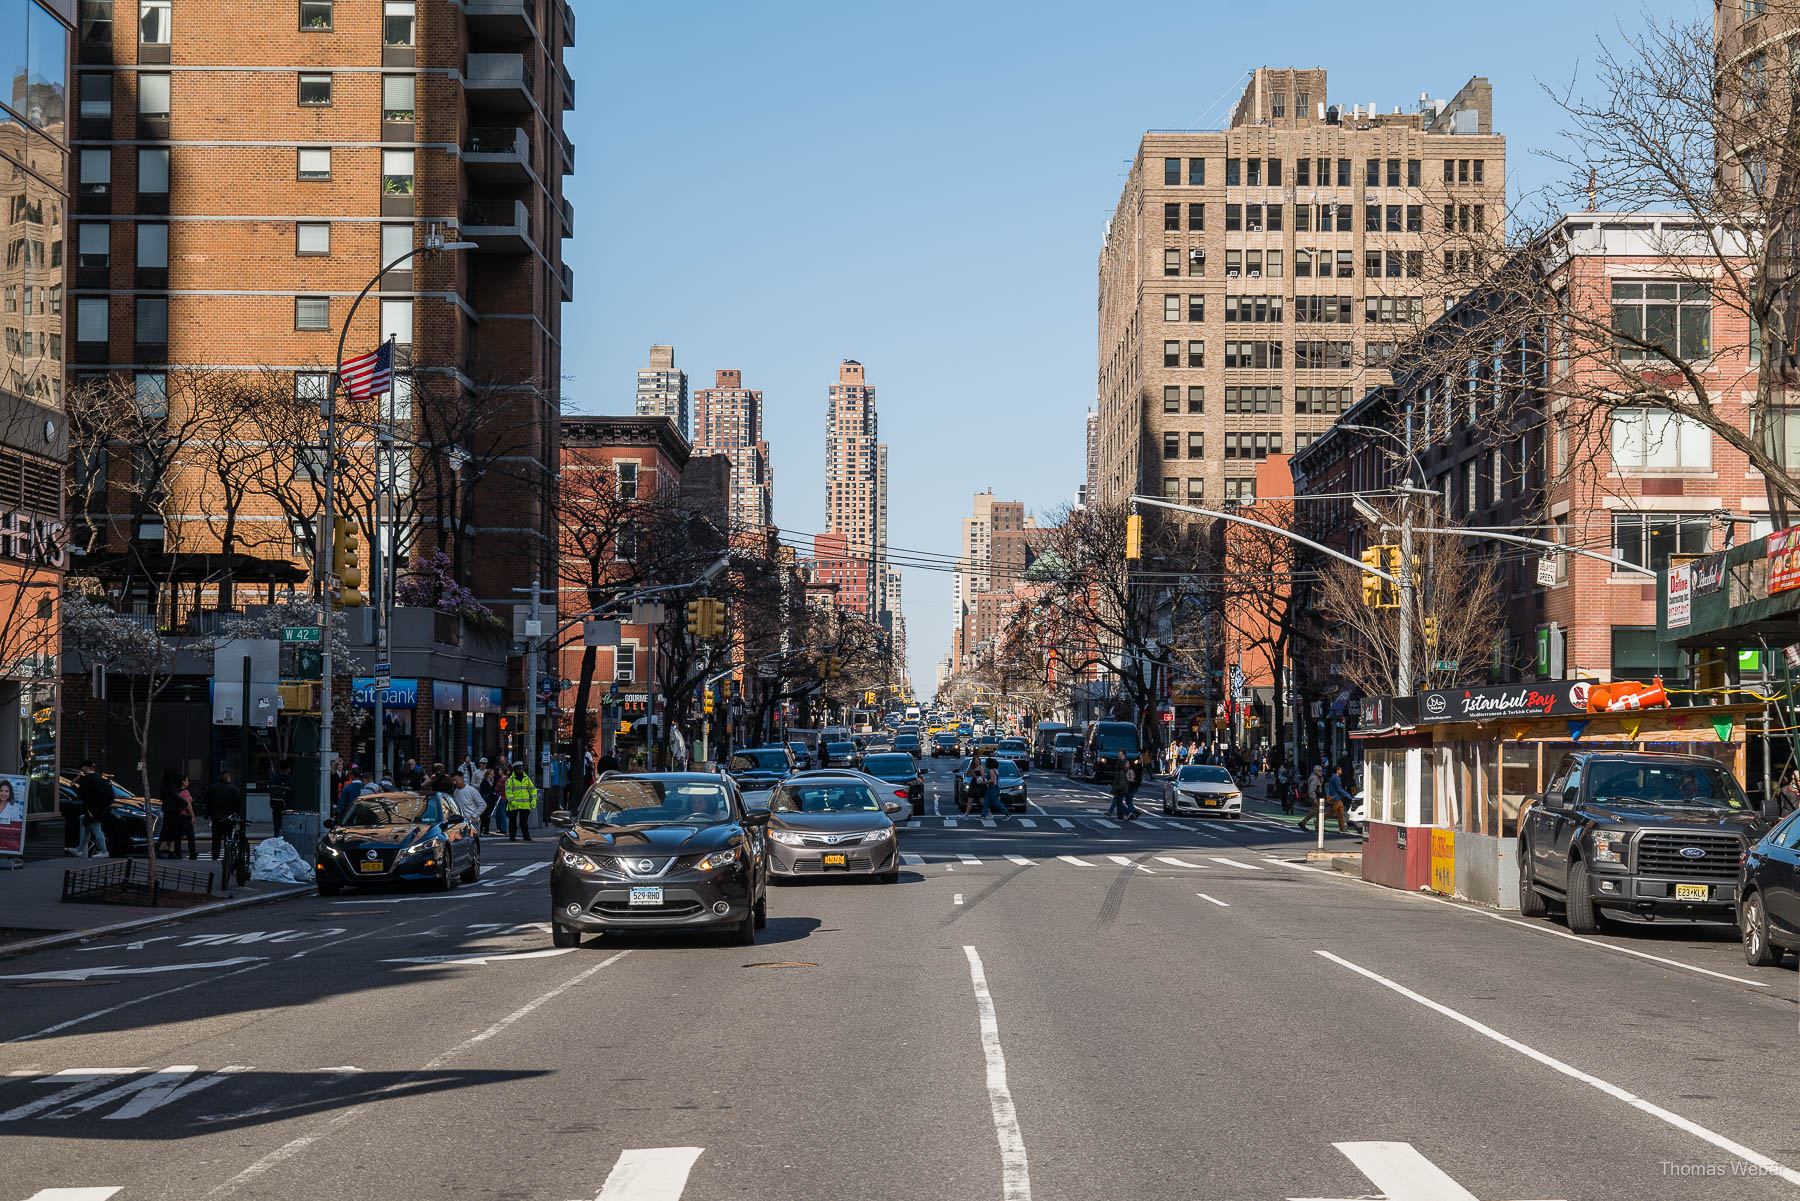 Wolkenkratzer und Straßen in New York City USA, Thomas Weber, Fotograf Oldenburg